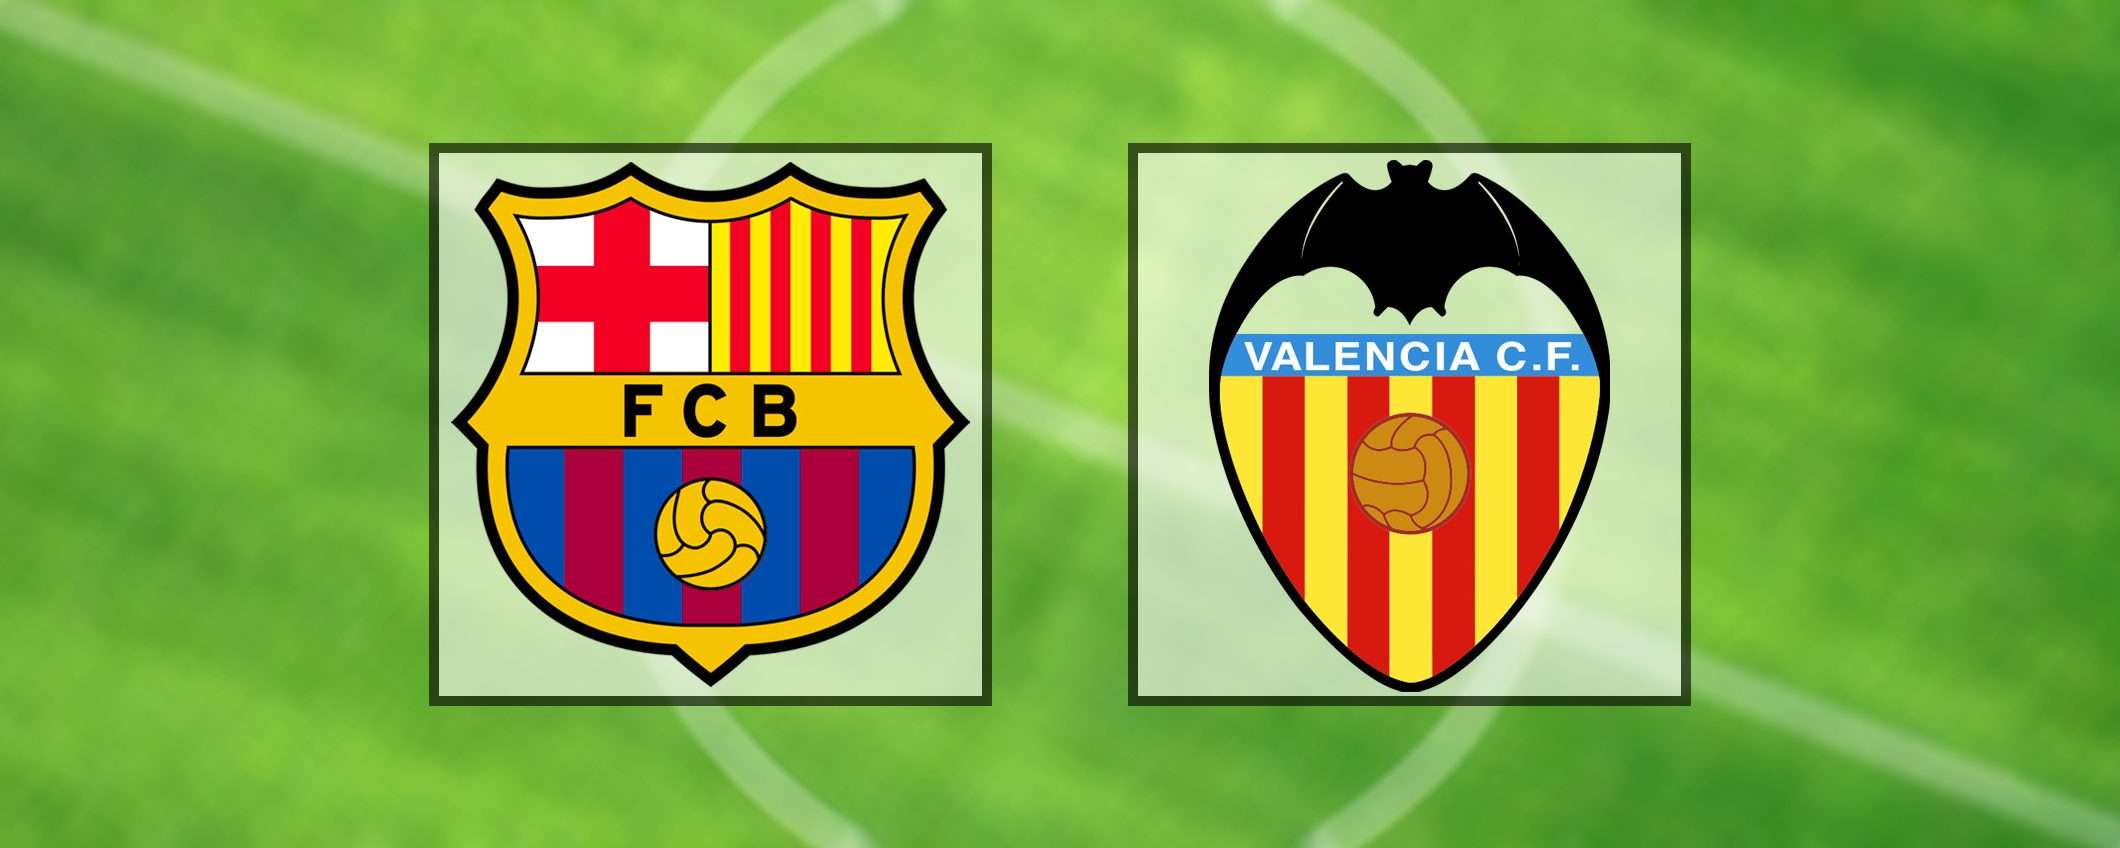 Come vedere Barcellona-Valencia in streaming